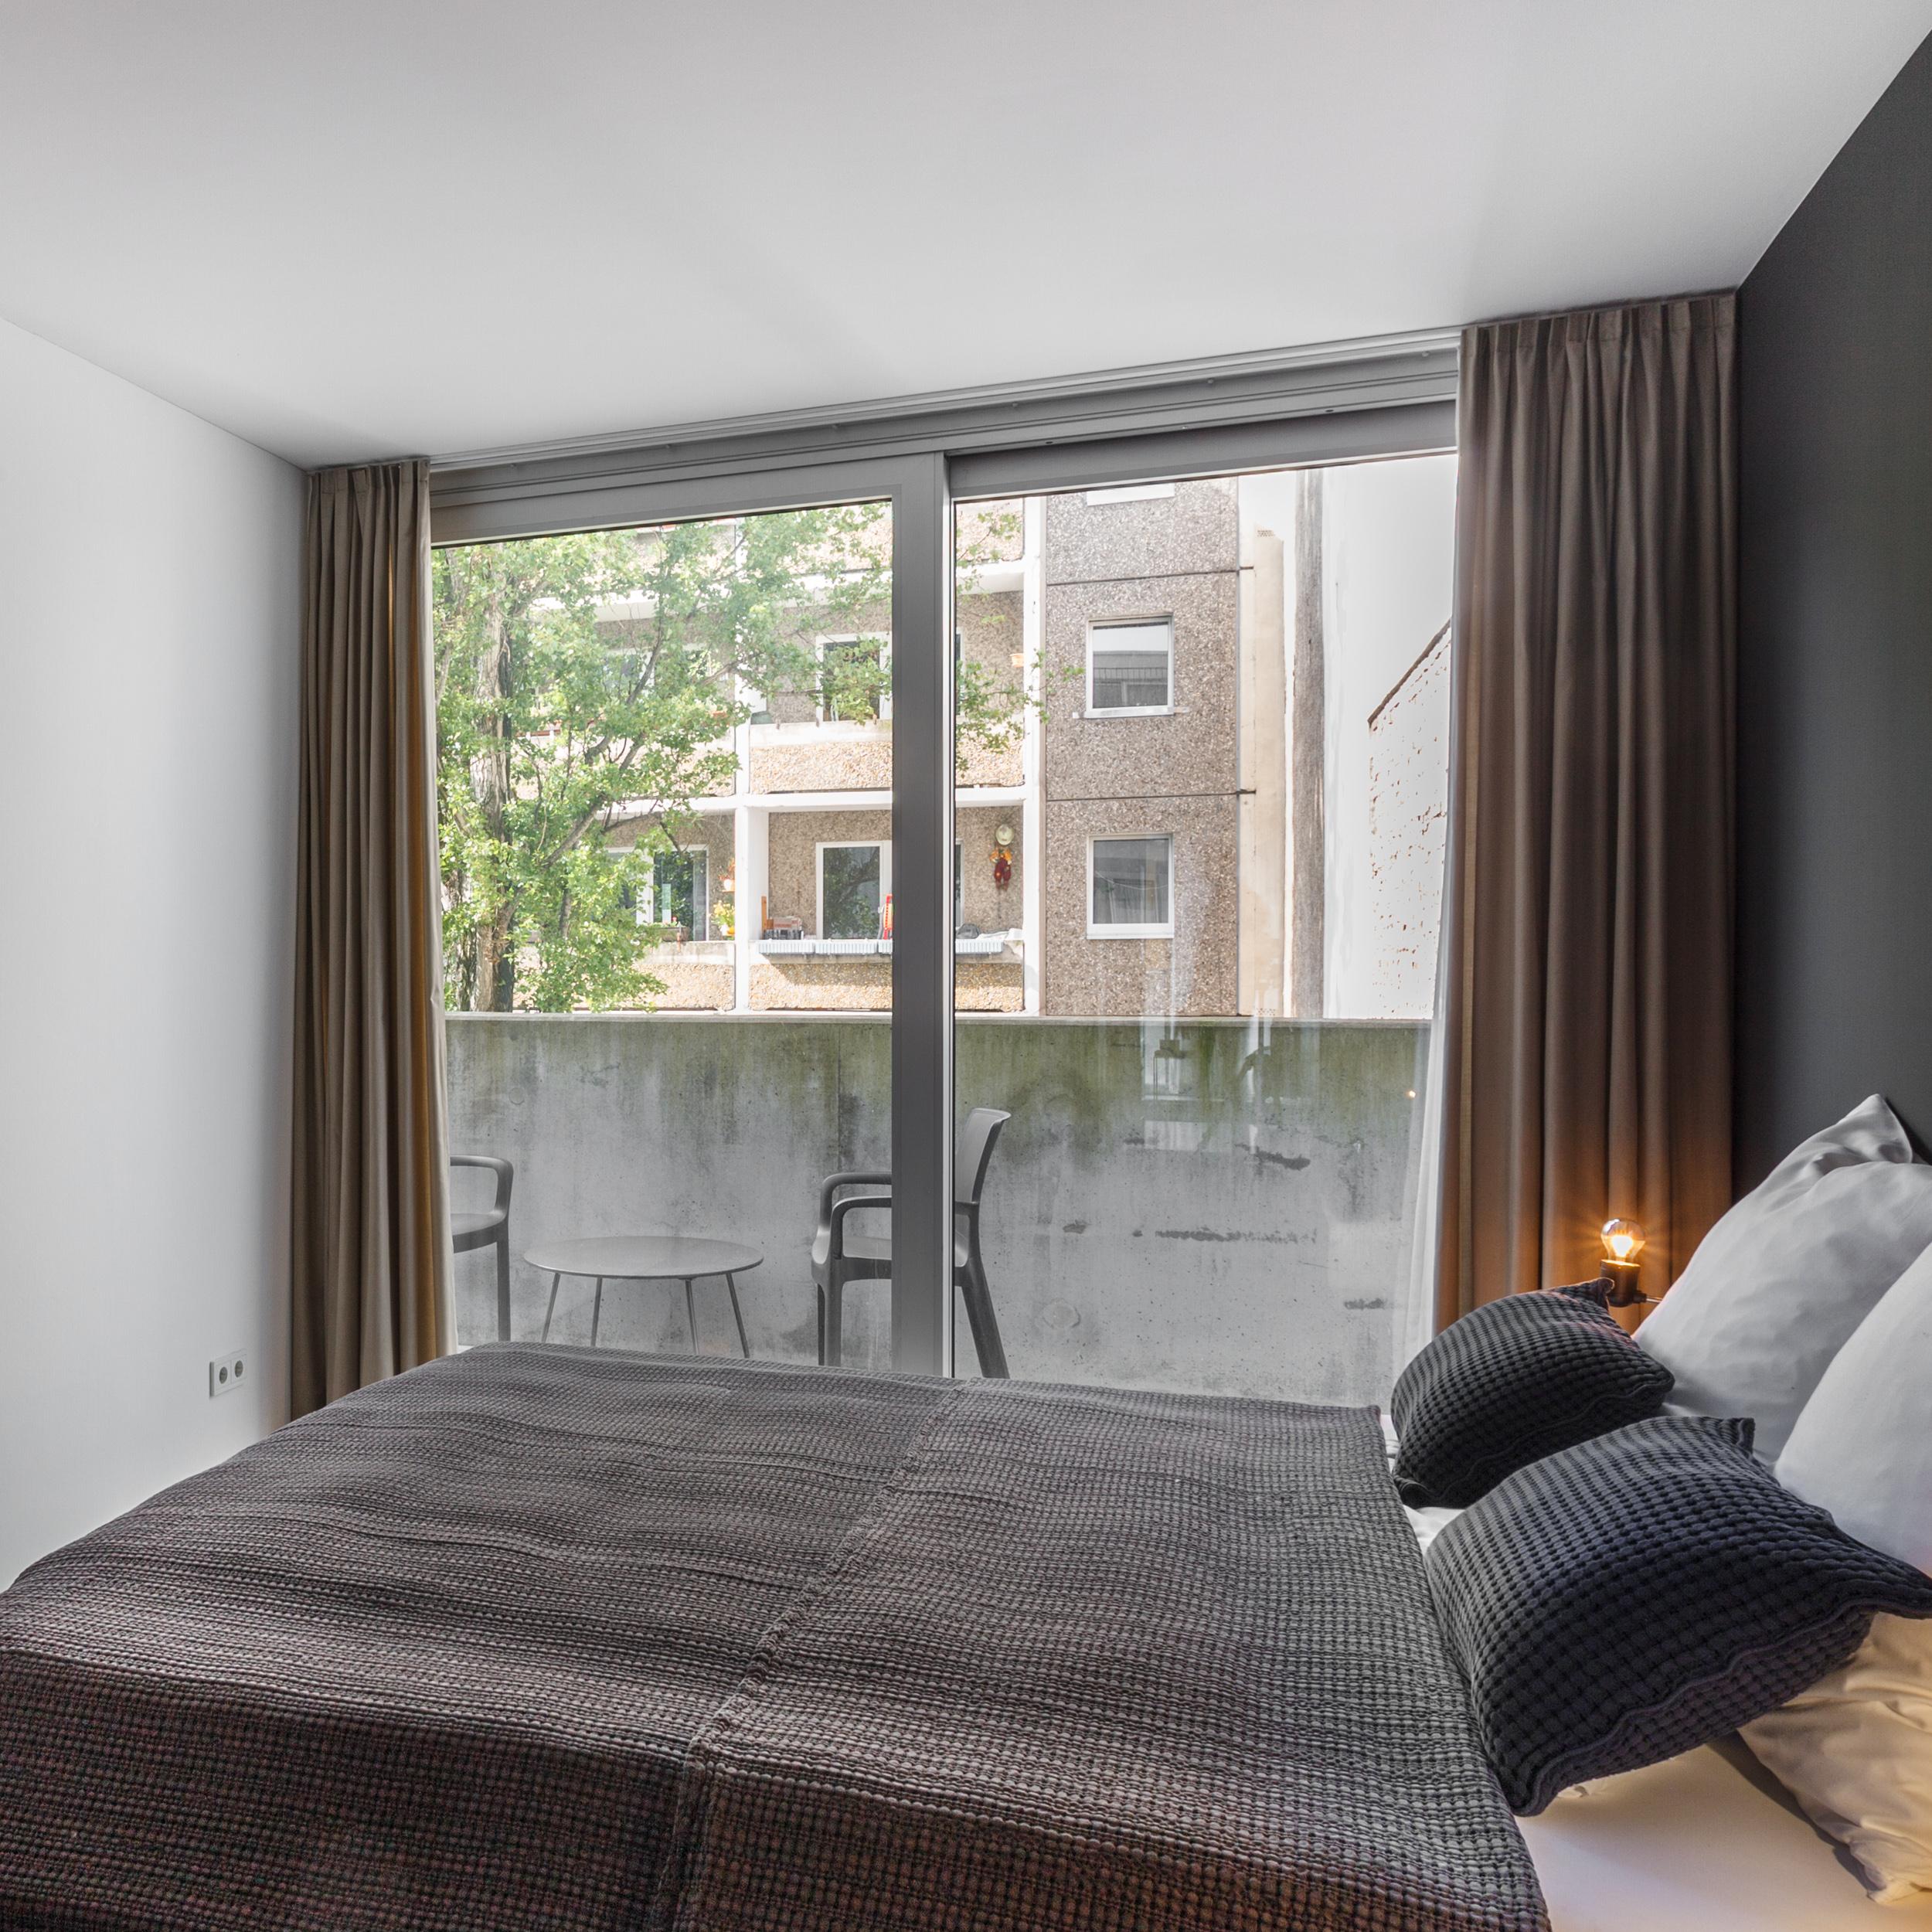 Loft Schlafzimmer #grauewand #tagesdecke #vorhang #bodentiefefenster #schlafzimmerbeleuchtung ©EMMA B. HOME